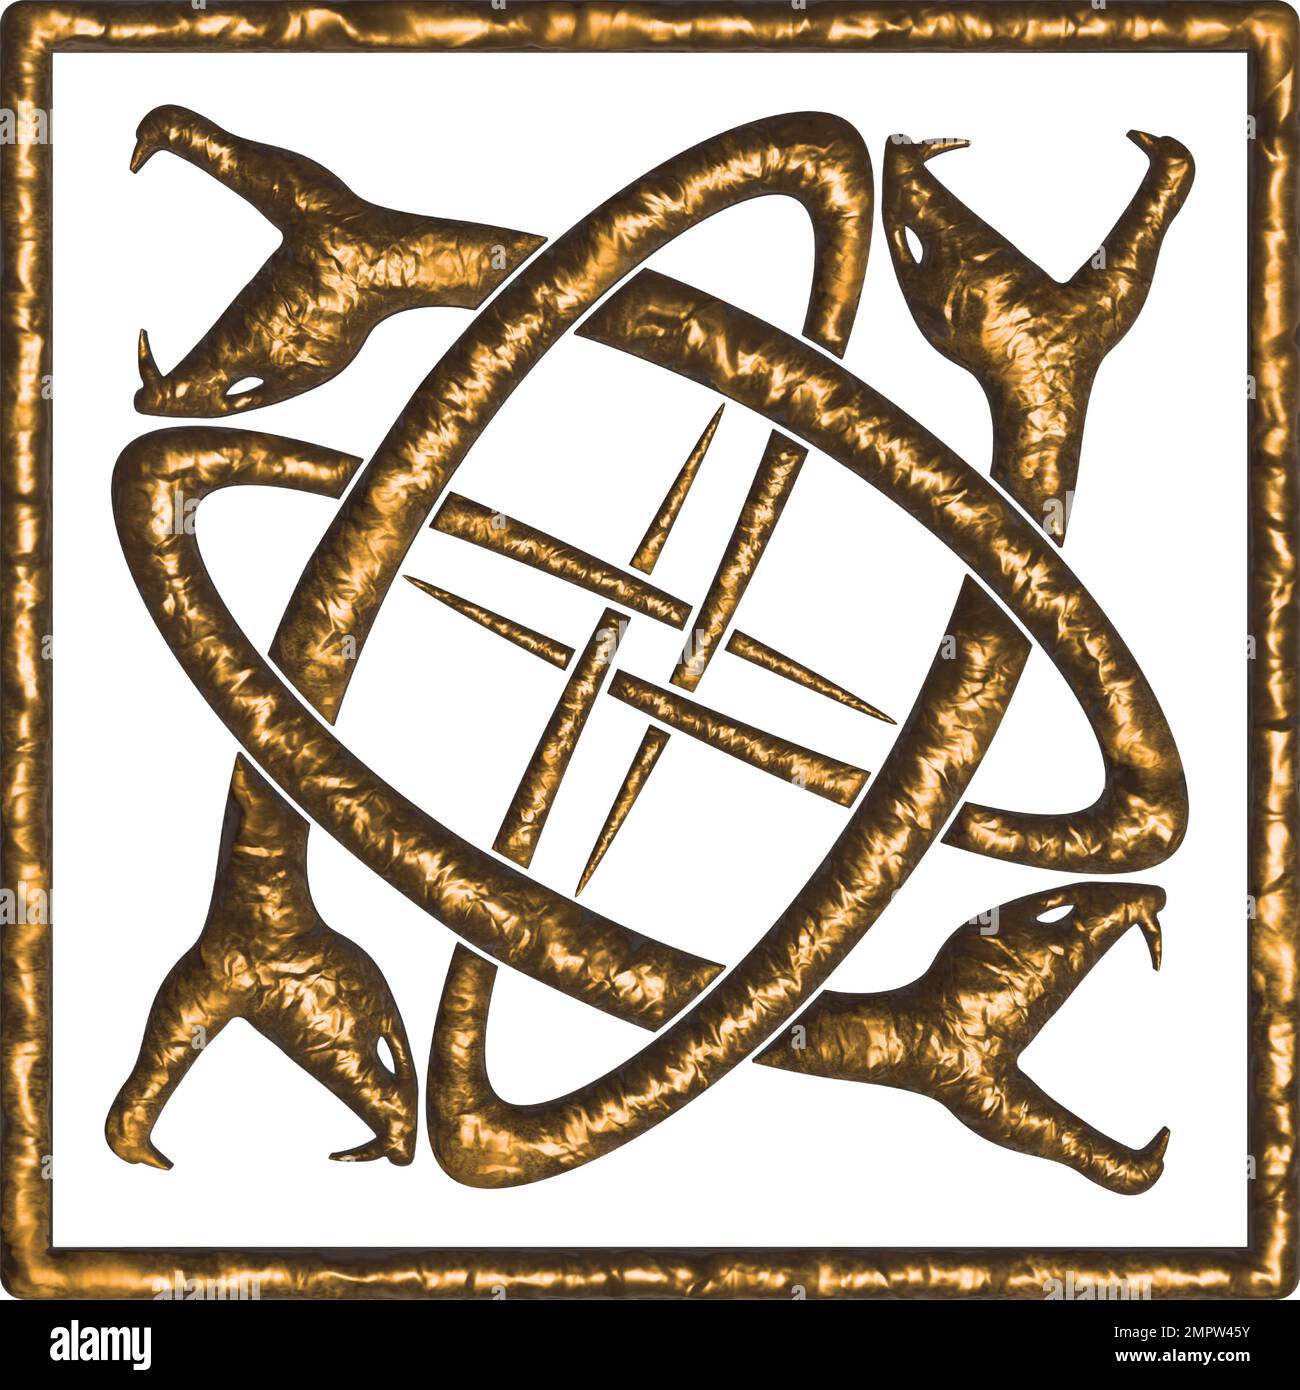 Cuatro serpientes entrelazadas encerradas en un cuadrado - oro sobre blanco Ilustración del Vector